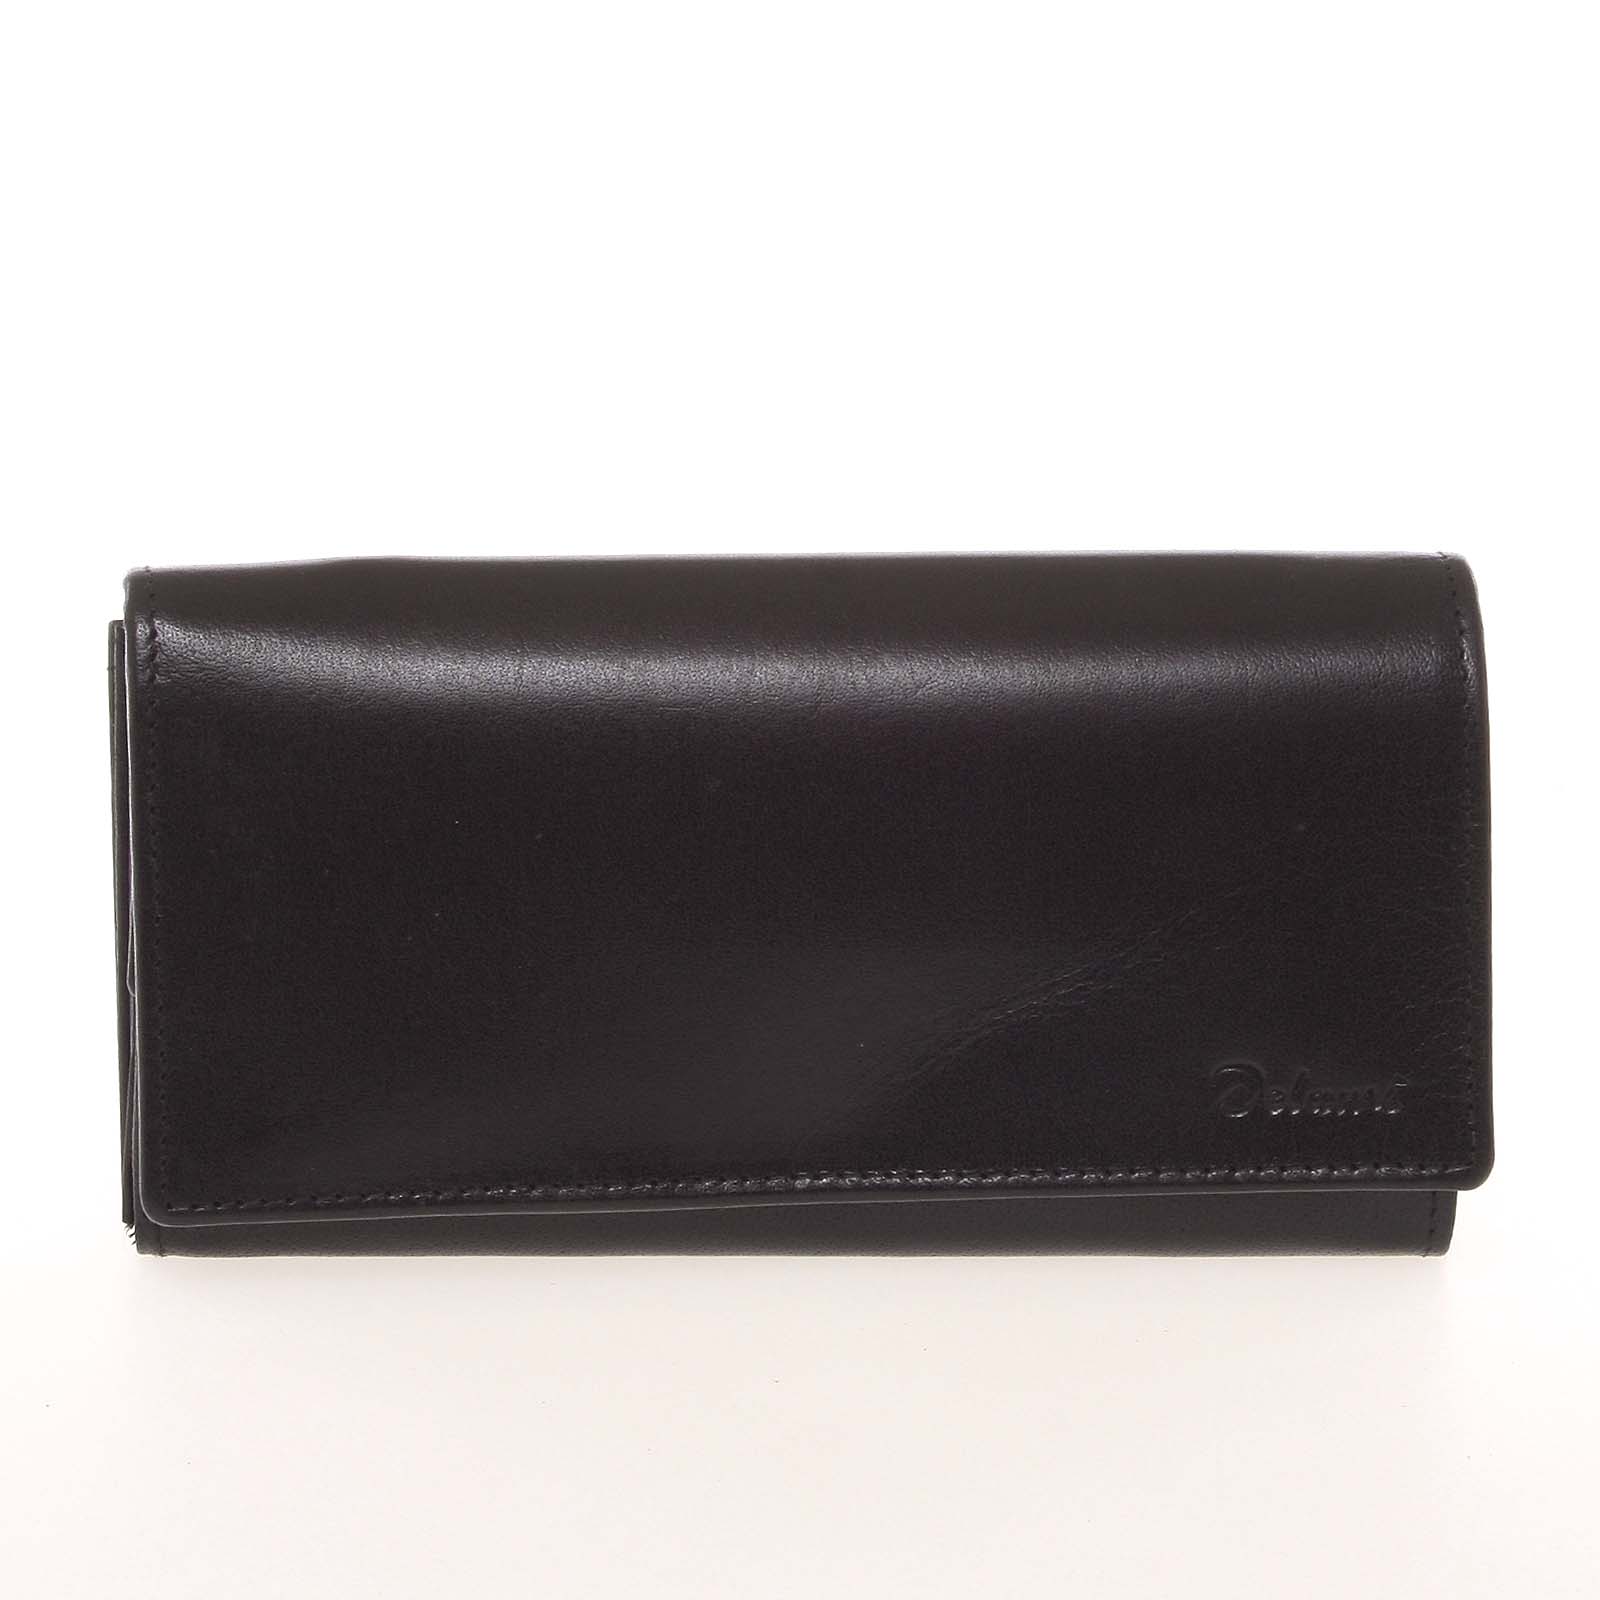 Kvalitná dámska kožená čierna peňaženka - Delami BAGL04104